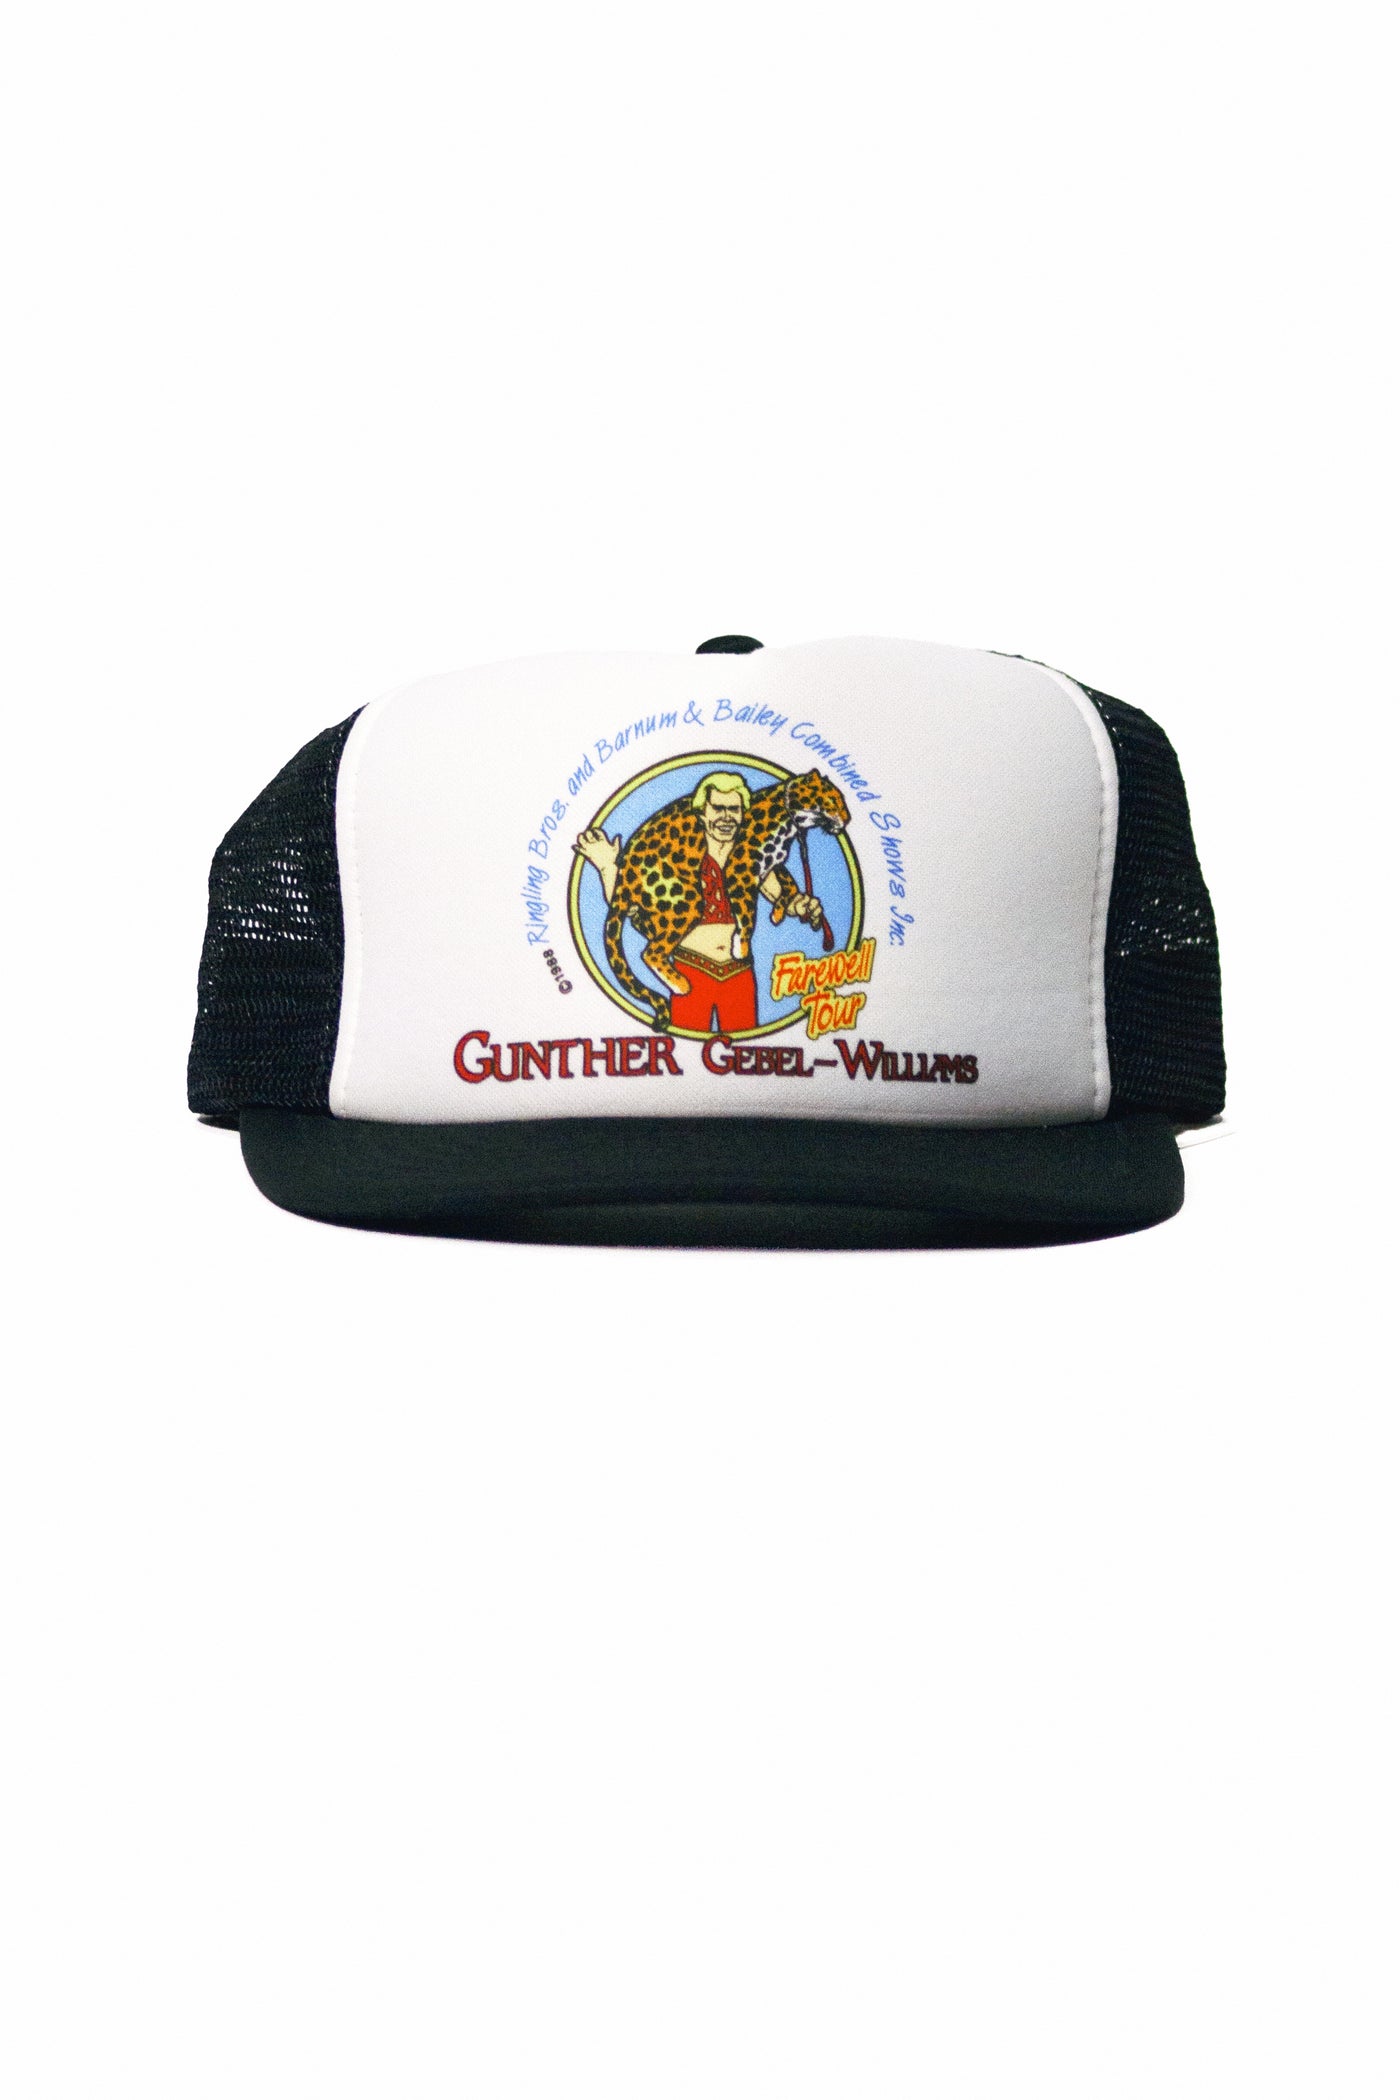 Vintage 1989 Gunther Gebel - Williams Farwell Tour Trucker Hat